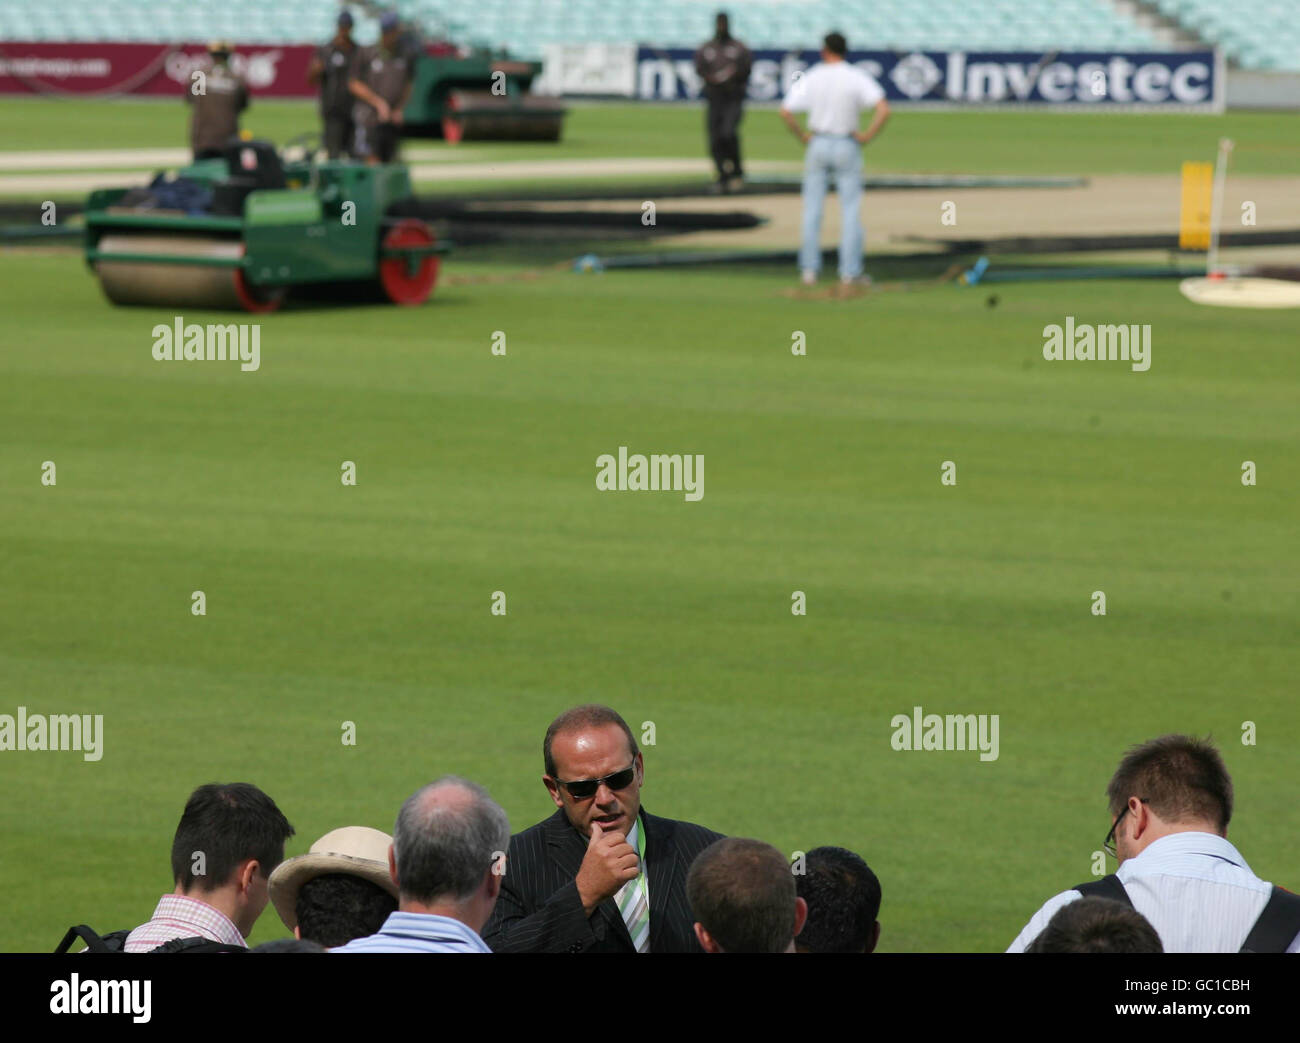 Clive Stephens wird von den Medien in Frage gestellt, als er Techniken zur Vorbereitung des Pitch for the Ashes im Brit Oval vorstellt. Stockfoto